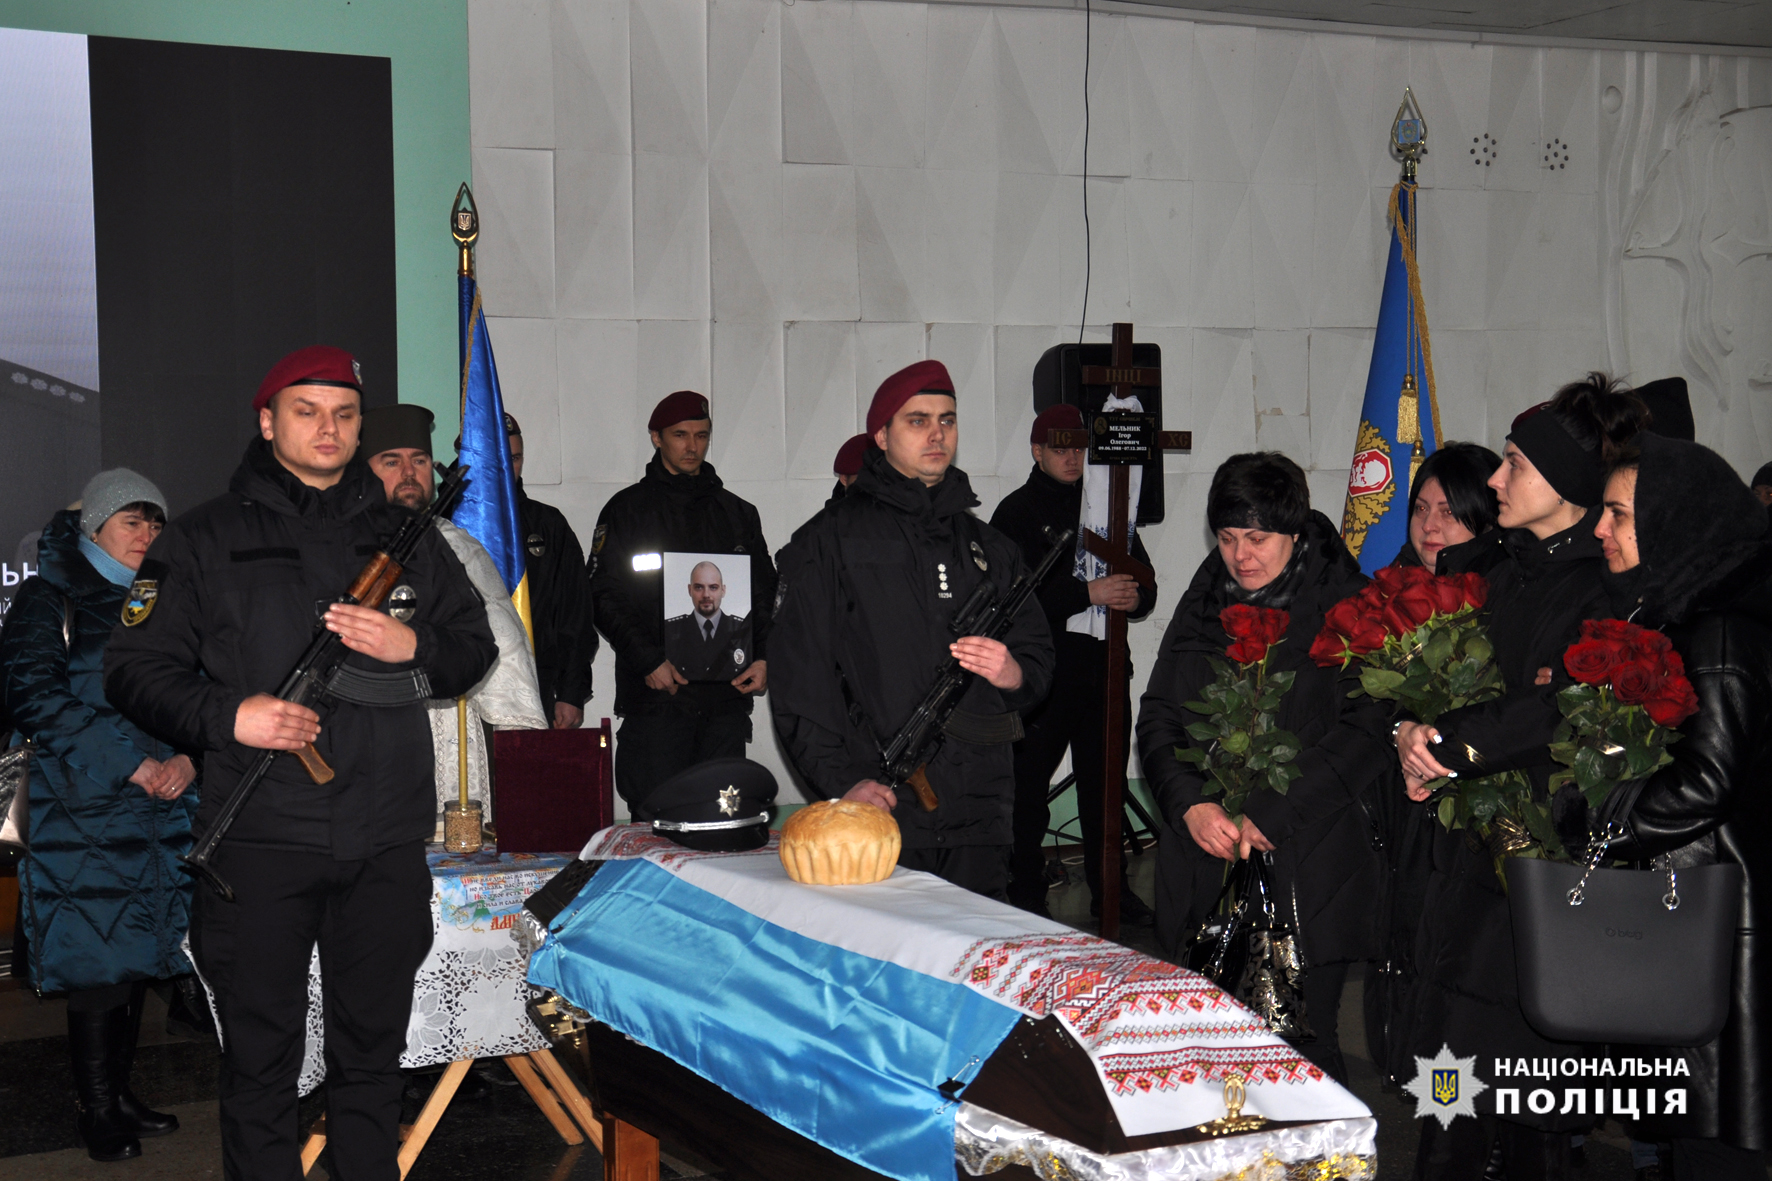 Ігоря Мельника поховали на місцевому кладовищі. Фото: facebook.com/cherkasypolice